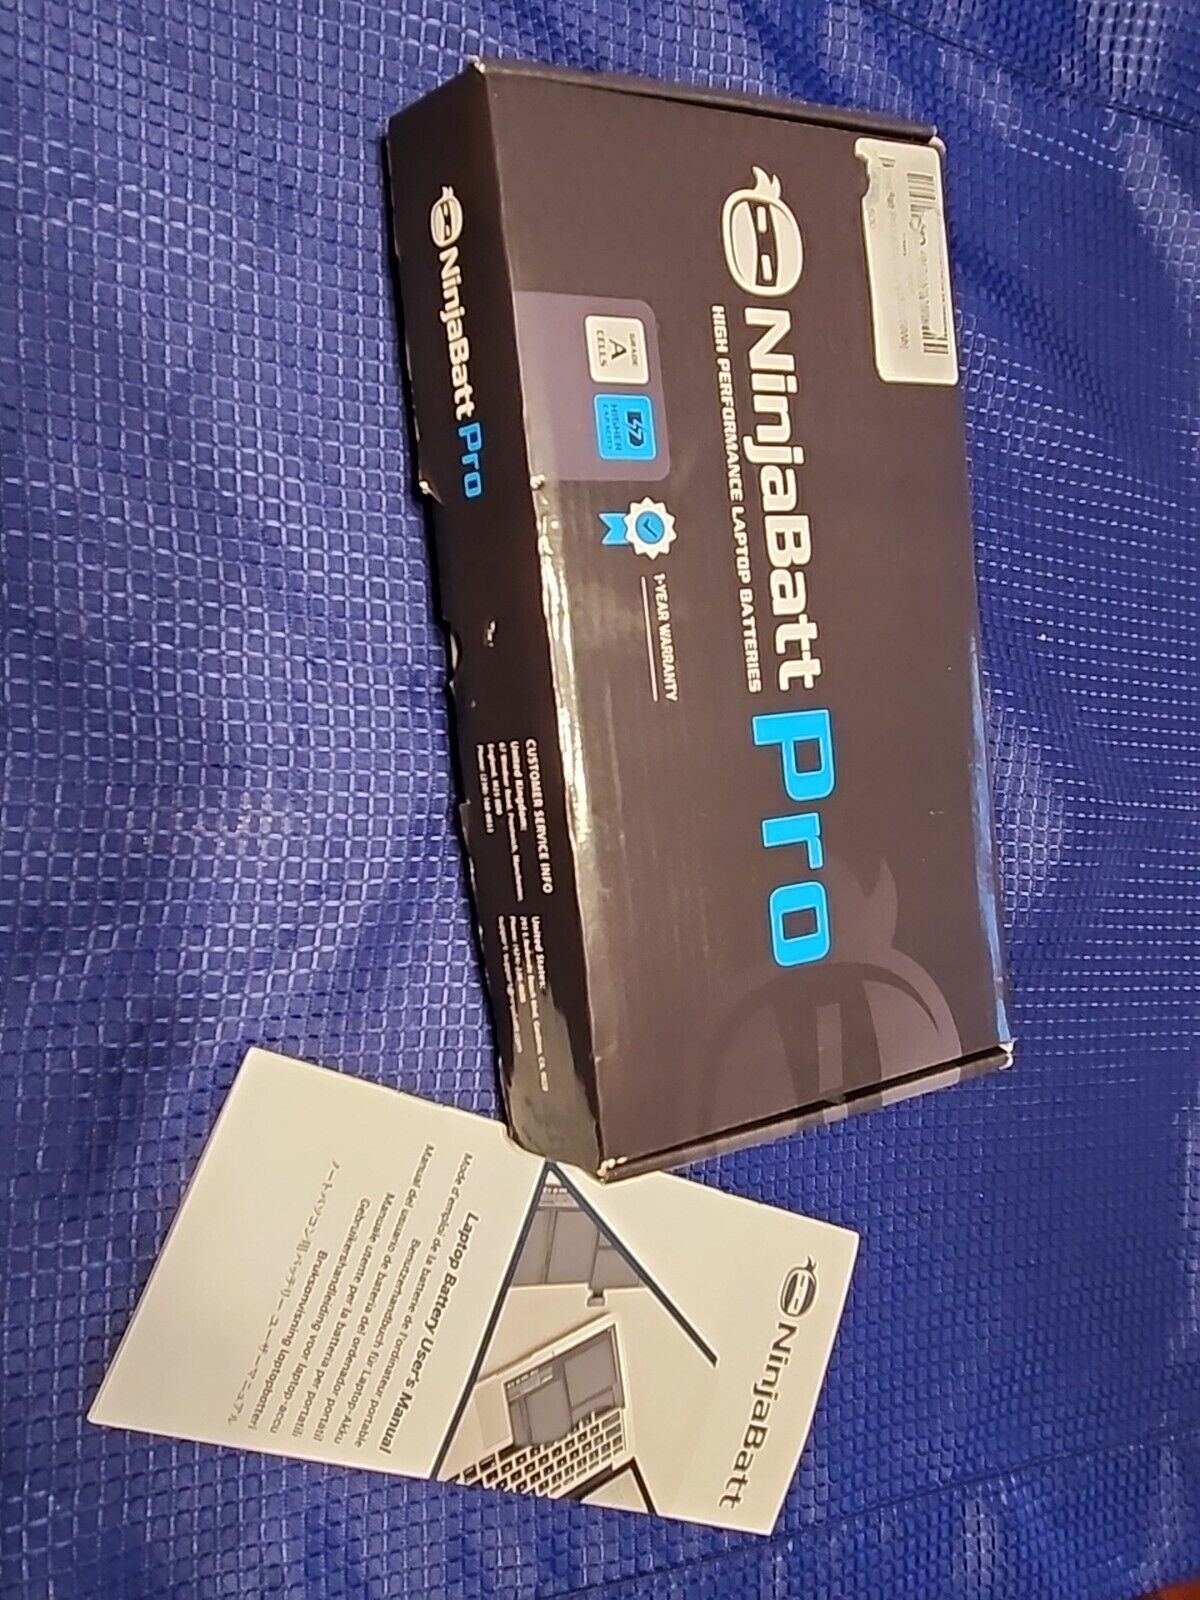 NinjaBatt Pro Laptop battery 15.2V/56Wh.   Brand New in Box